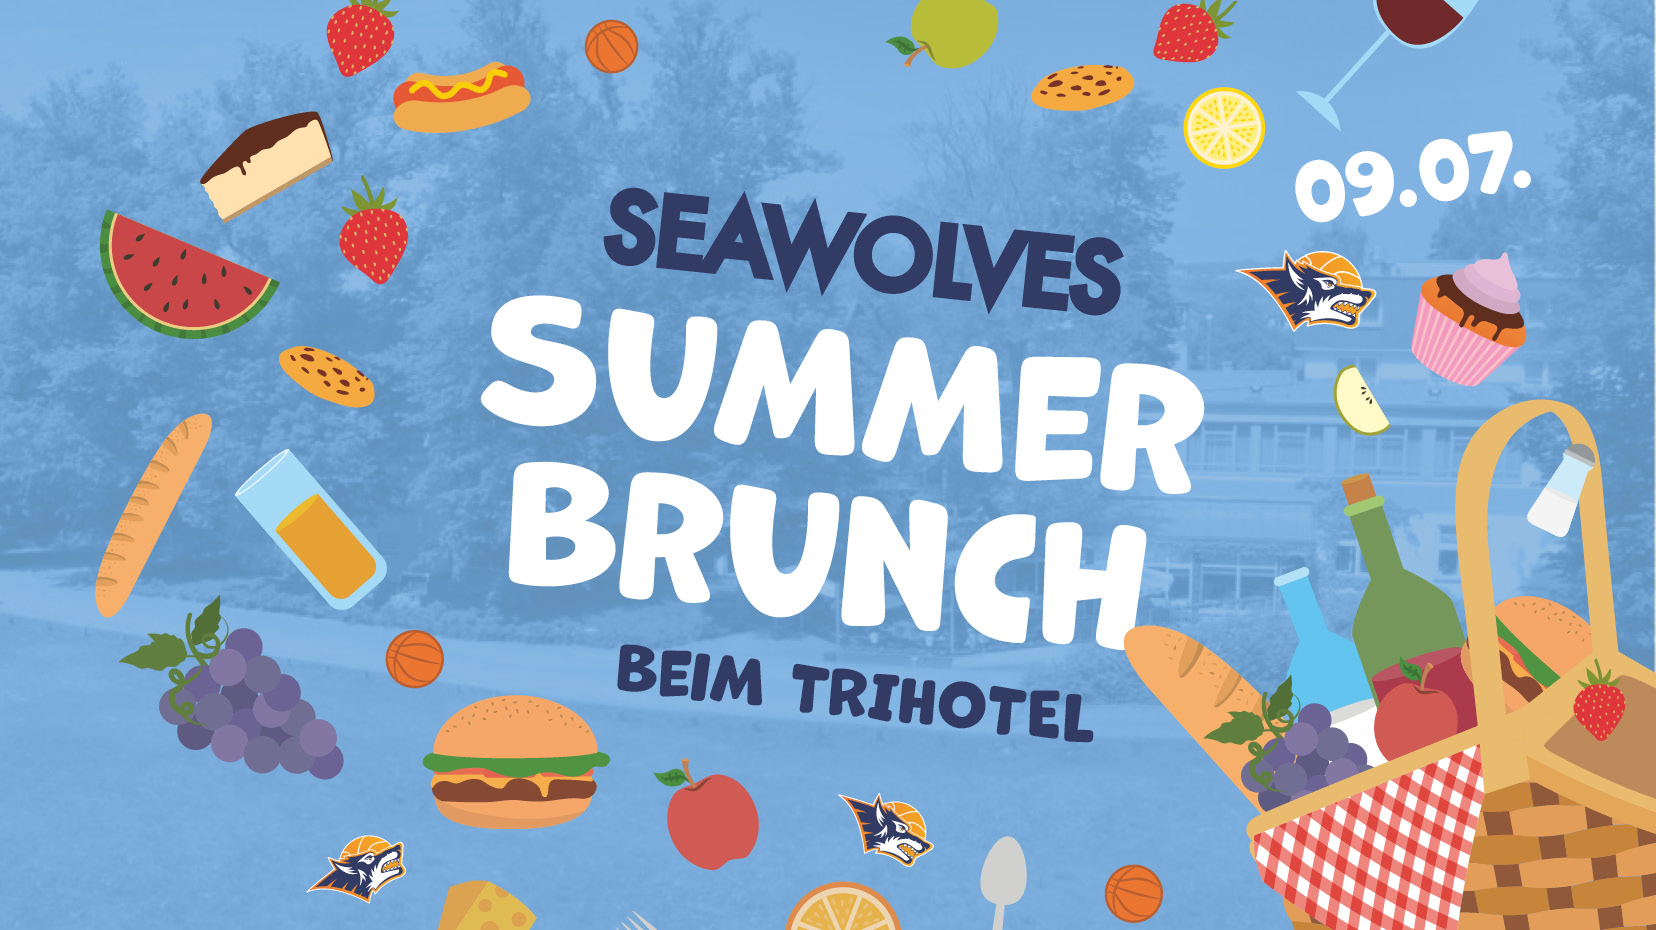 Seawolves Summer Brunch am 9. Juli